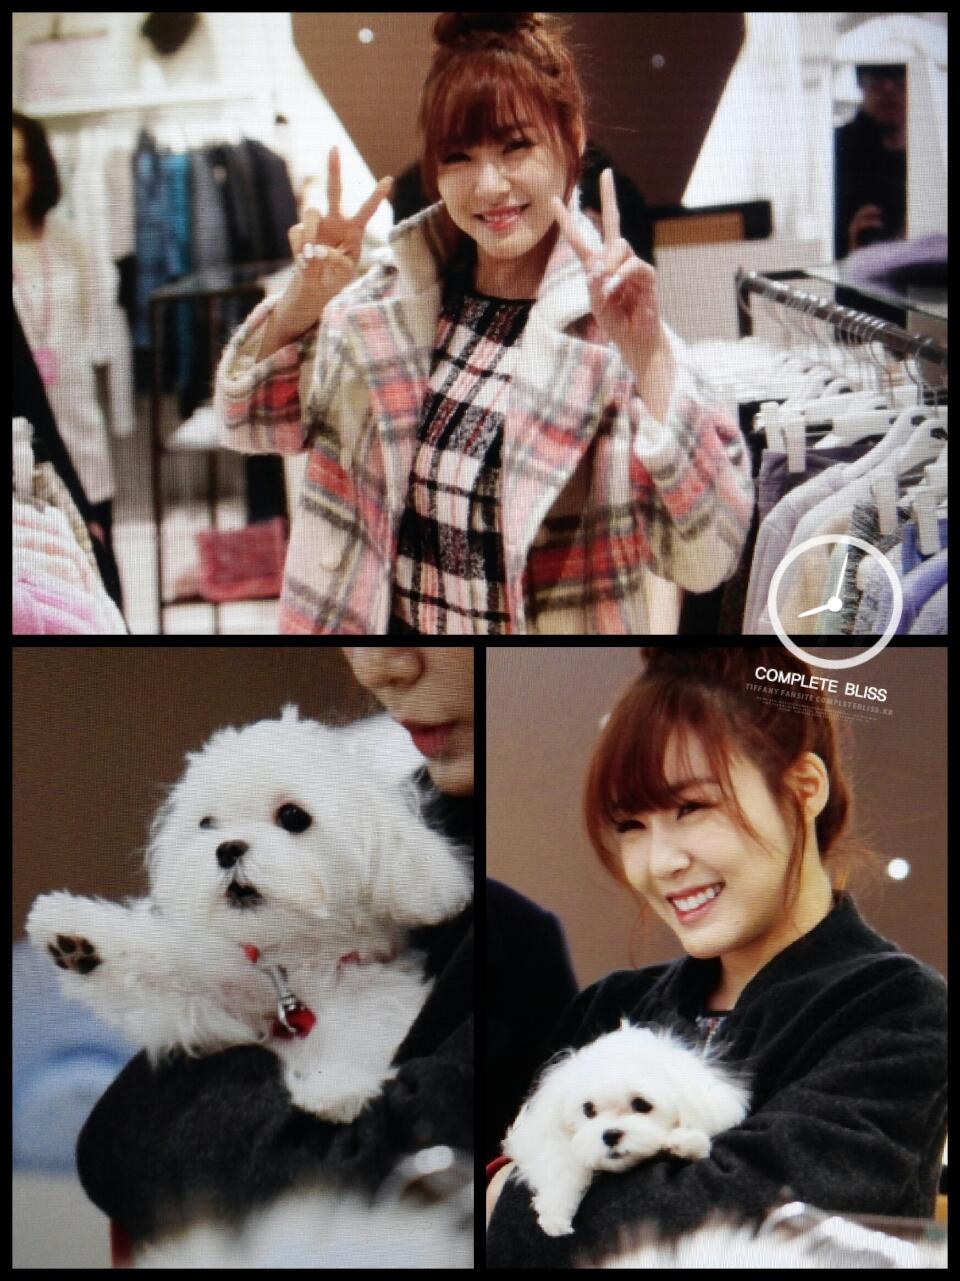 [PIC][28-11-2013]Tiffany ghé thăm cửa hàng "QUA" ở Hyundai Department Store vào trưa nay - Page 4 BaJCRZFCMAAKeOS